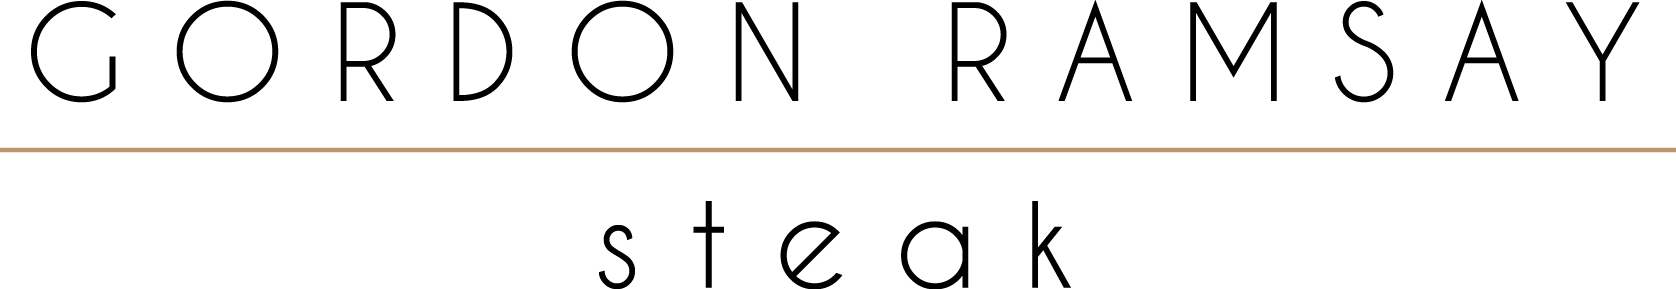 Gordon Ramsay logo